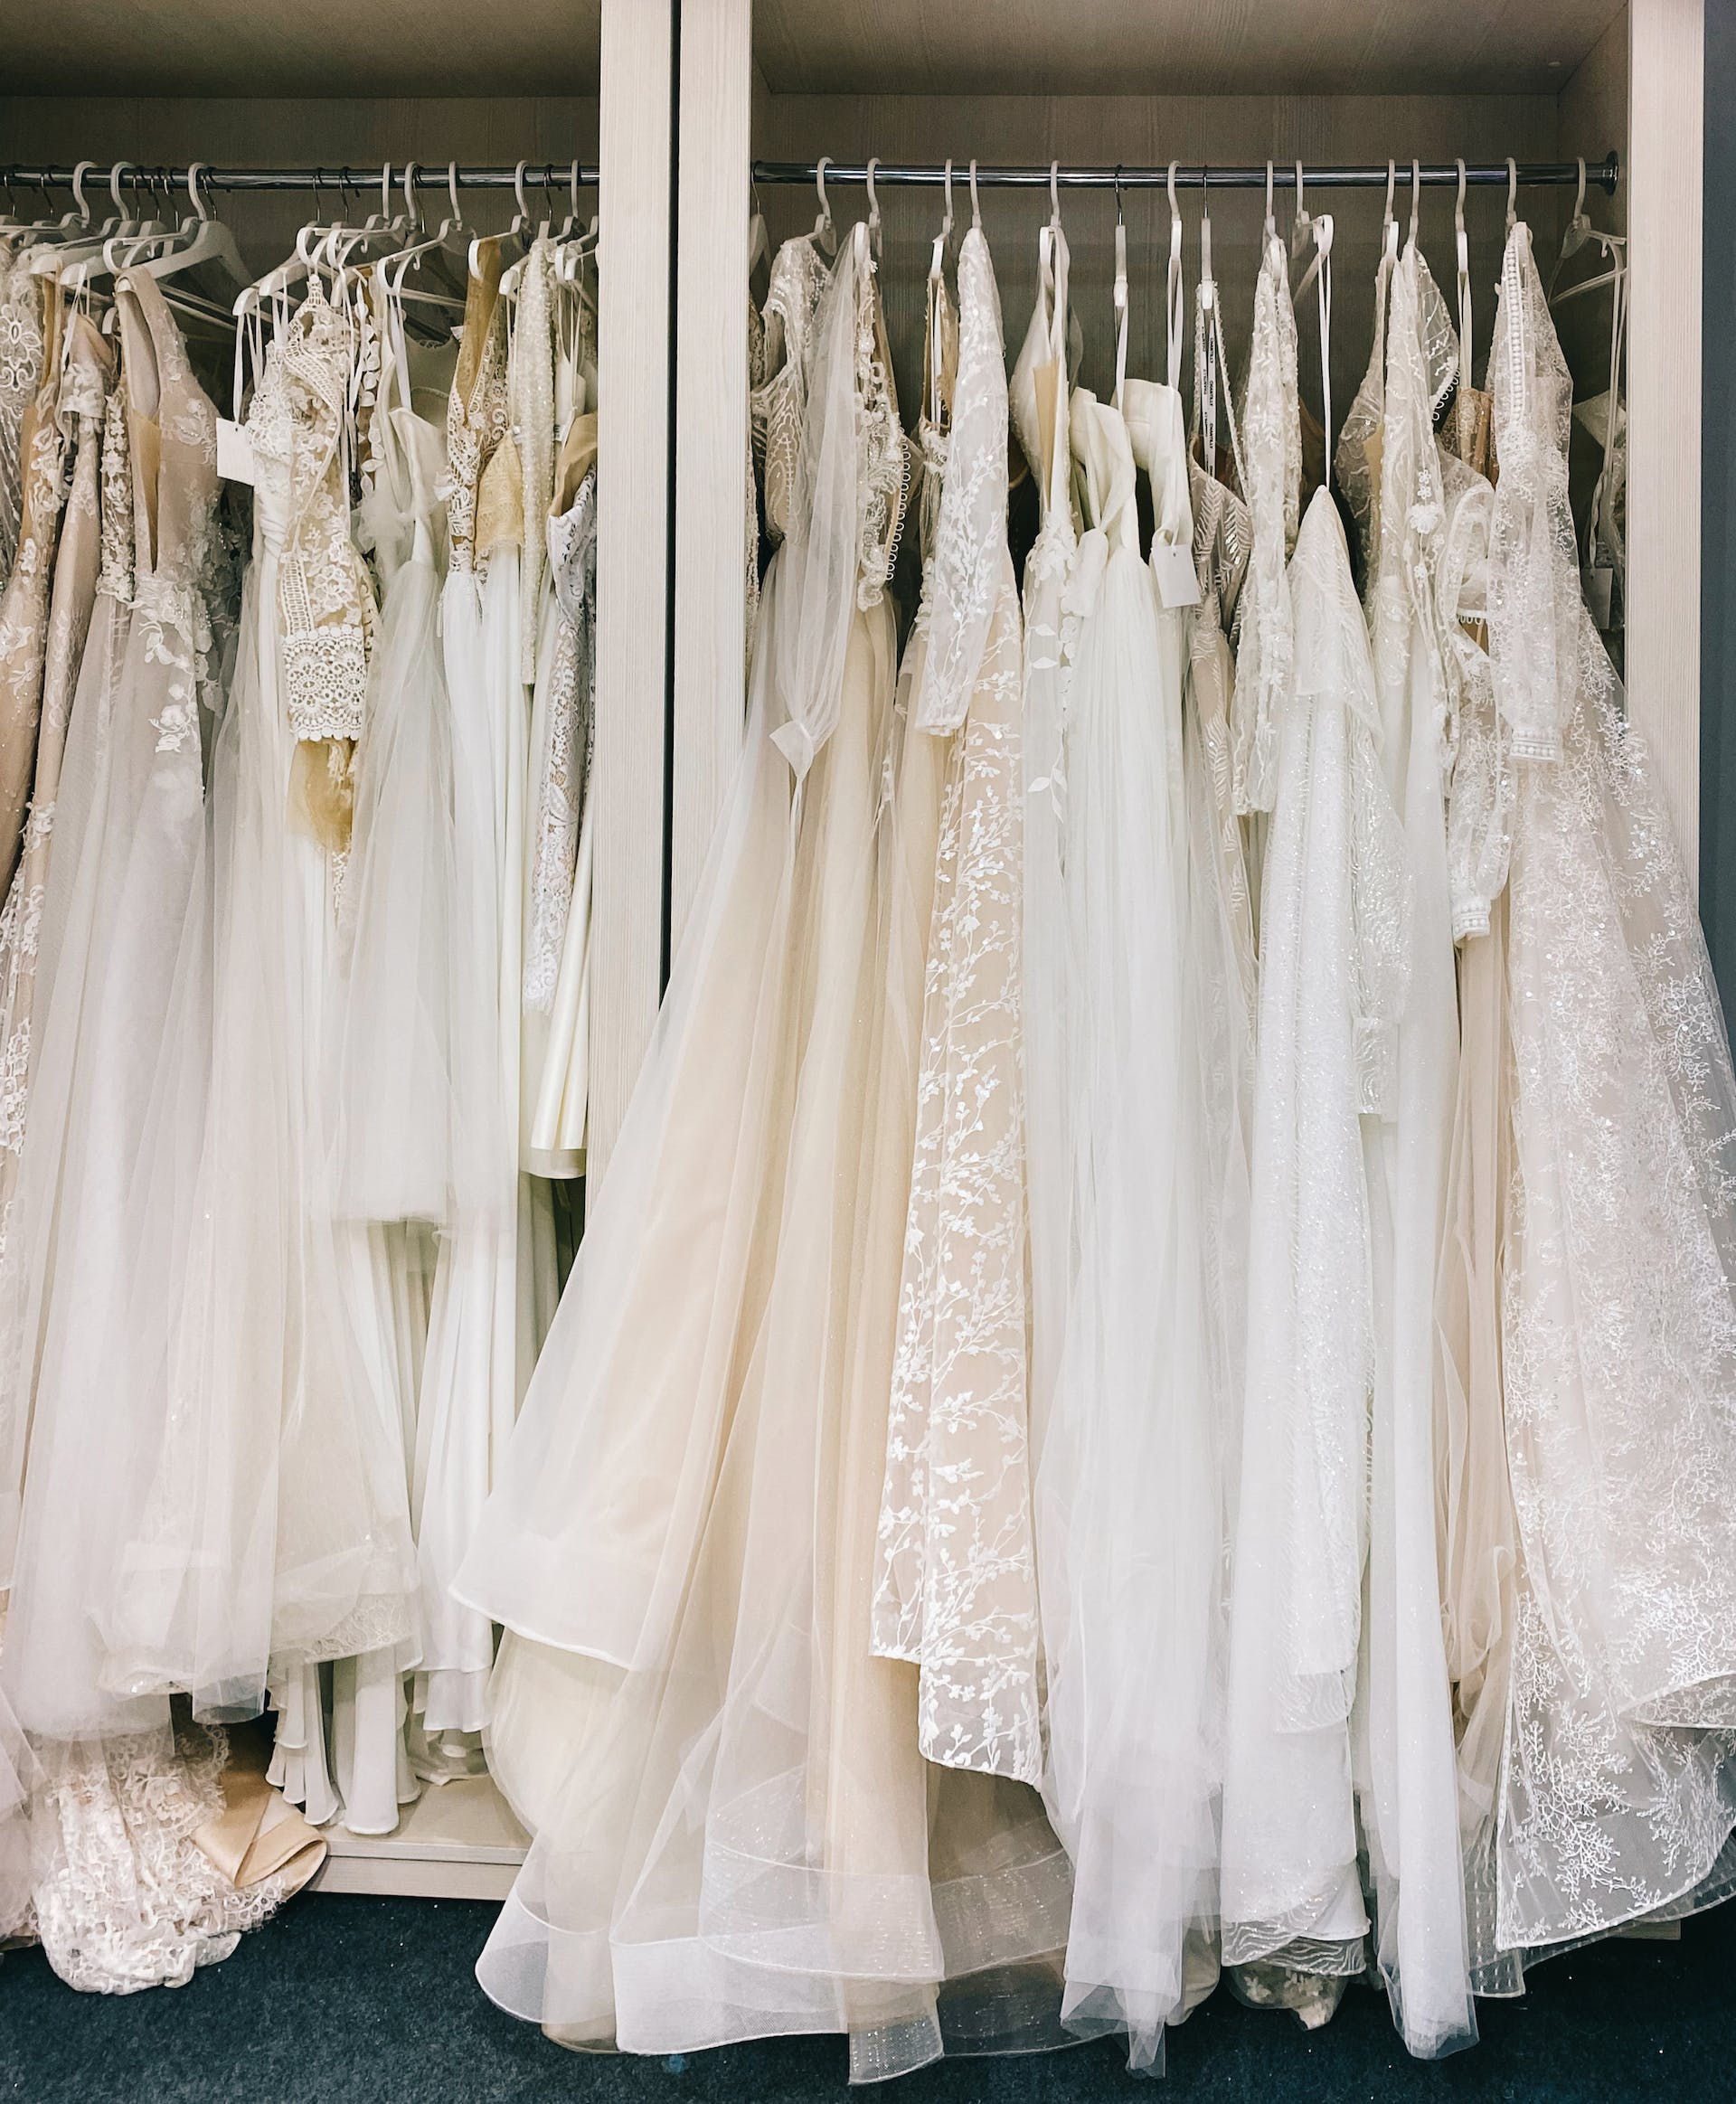 Vestidos de novia colgados en una tienda | Foto: Pexels